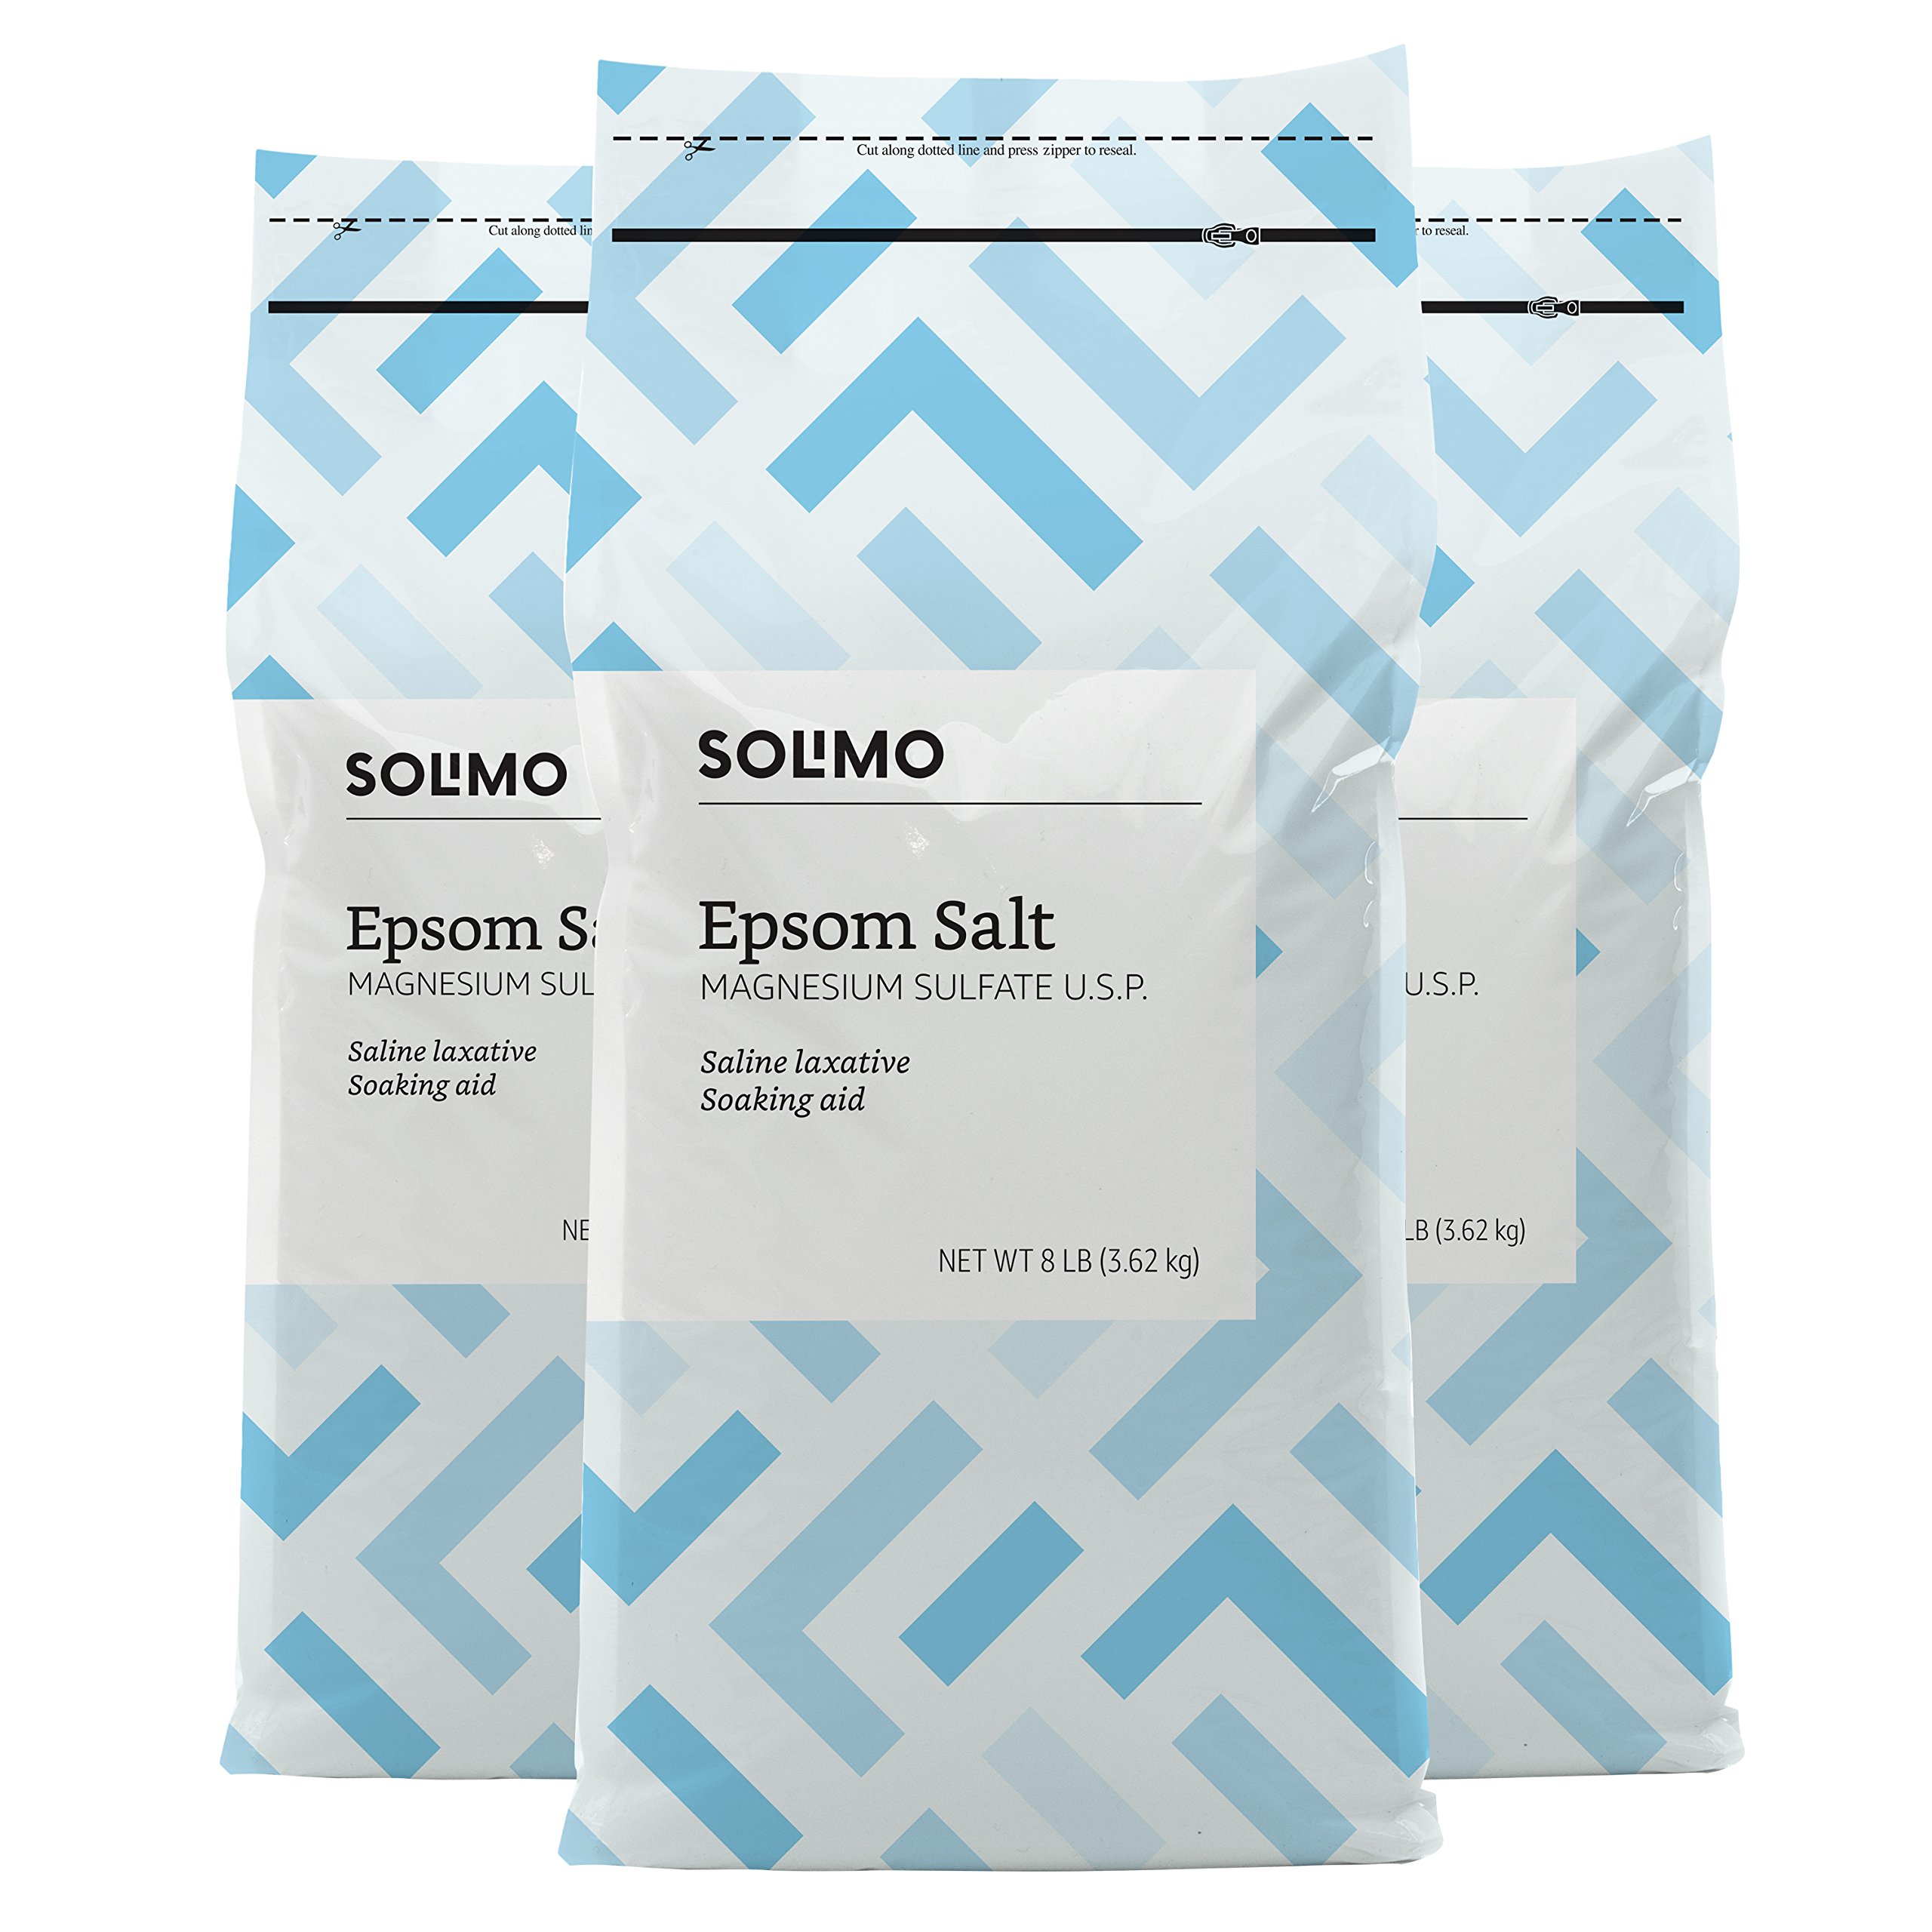 Amazon Brand-Solimo Epsom Salt Soak, Magnesium Sulfate USP, 8 Pound, 128 oz, Pack of 3 & Amazon Basics Epsom Salt Soaking Aid, Lavender Scented & Amazon Brand-Epsom Salt Soaking Aid